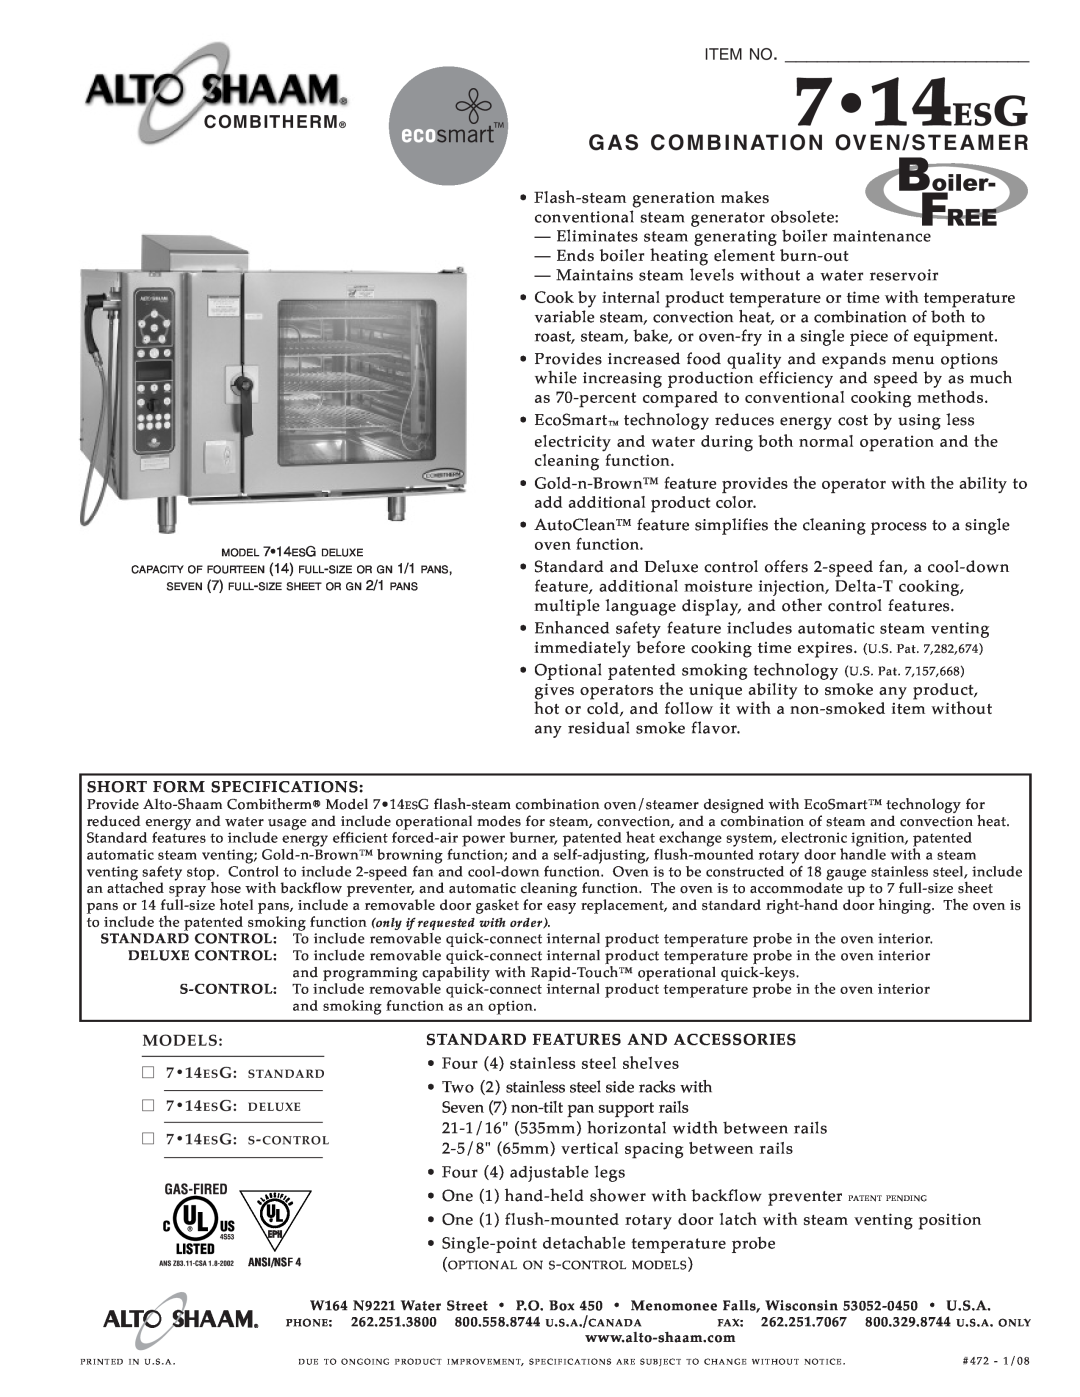 Alto-Shaam 7.14ESG specifications 714ESG, Gas Com Bination Oven/S Te Ame R, Item No, Combitherm 